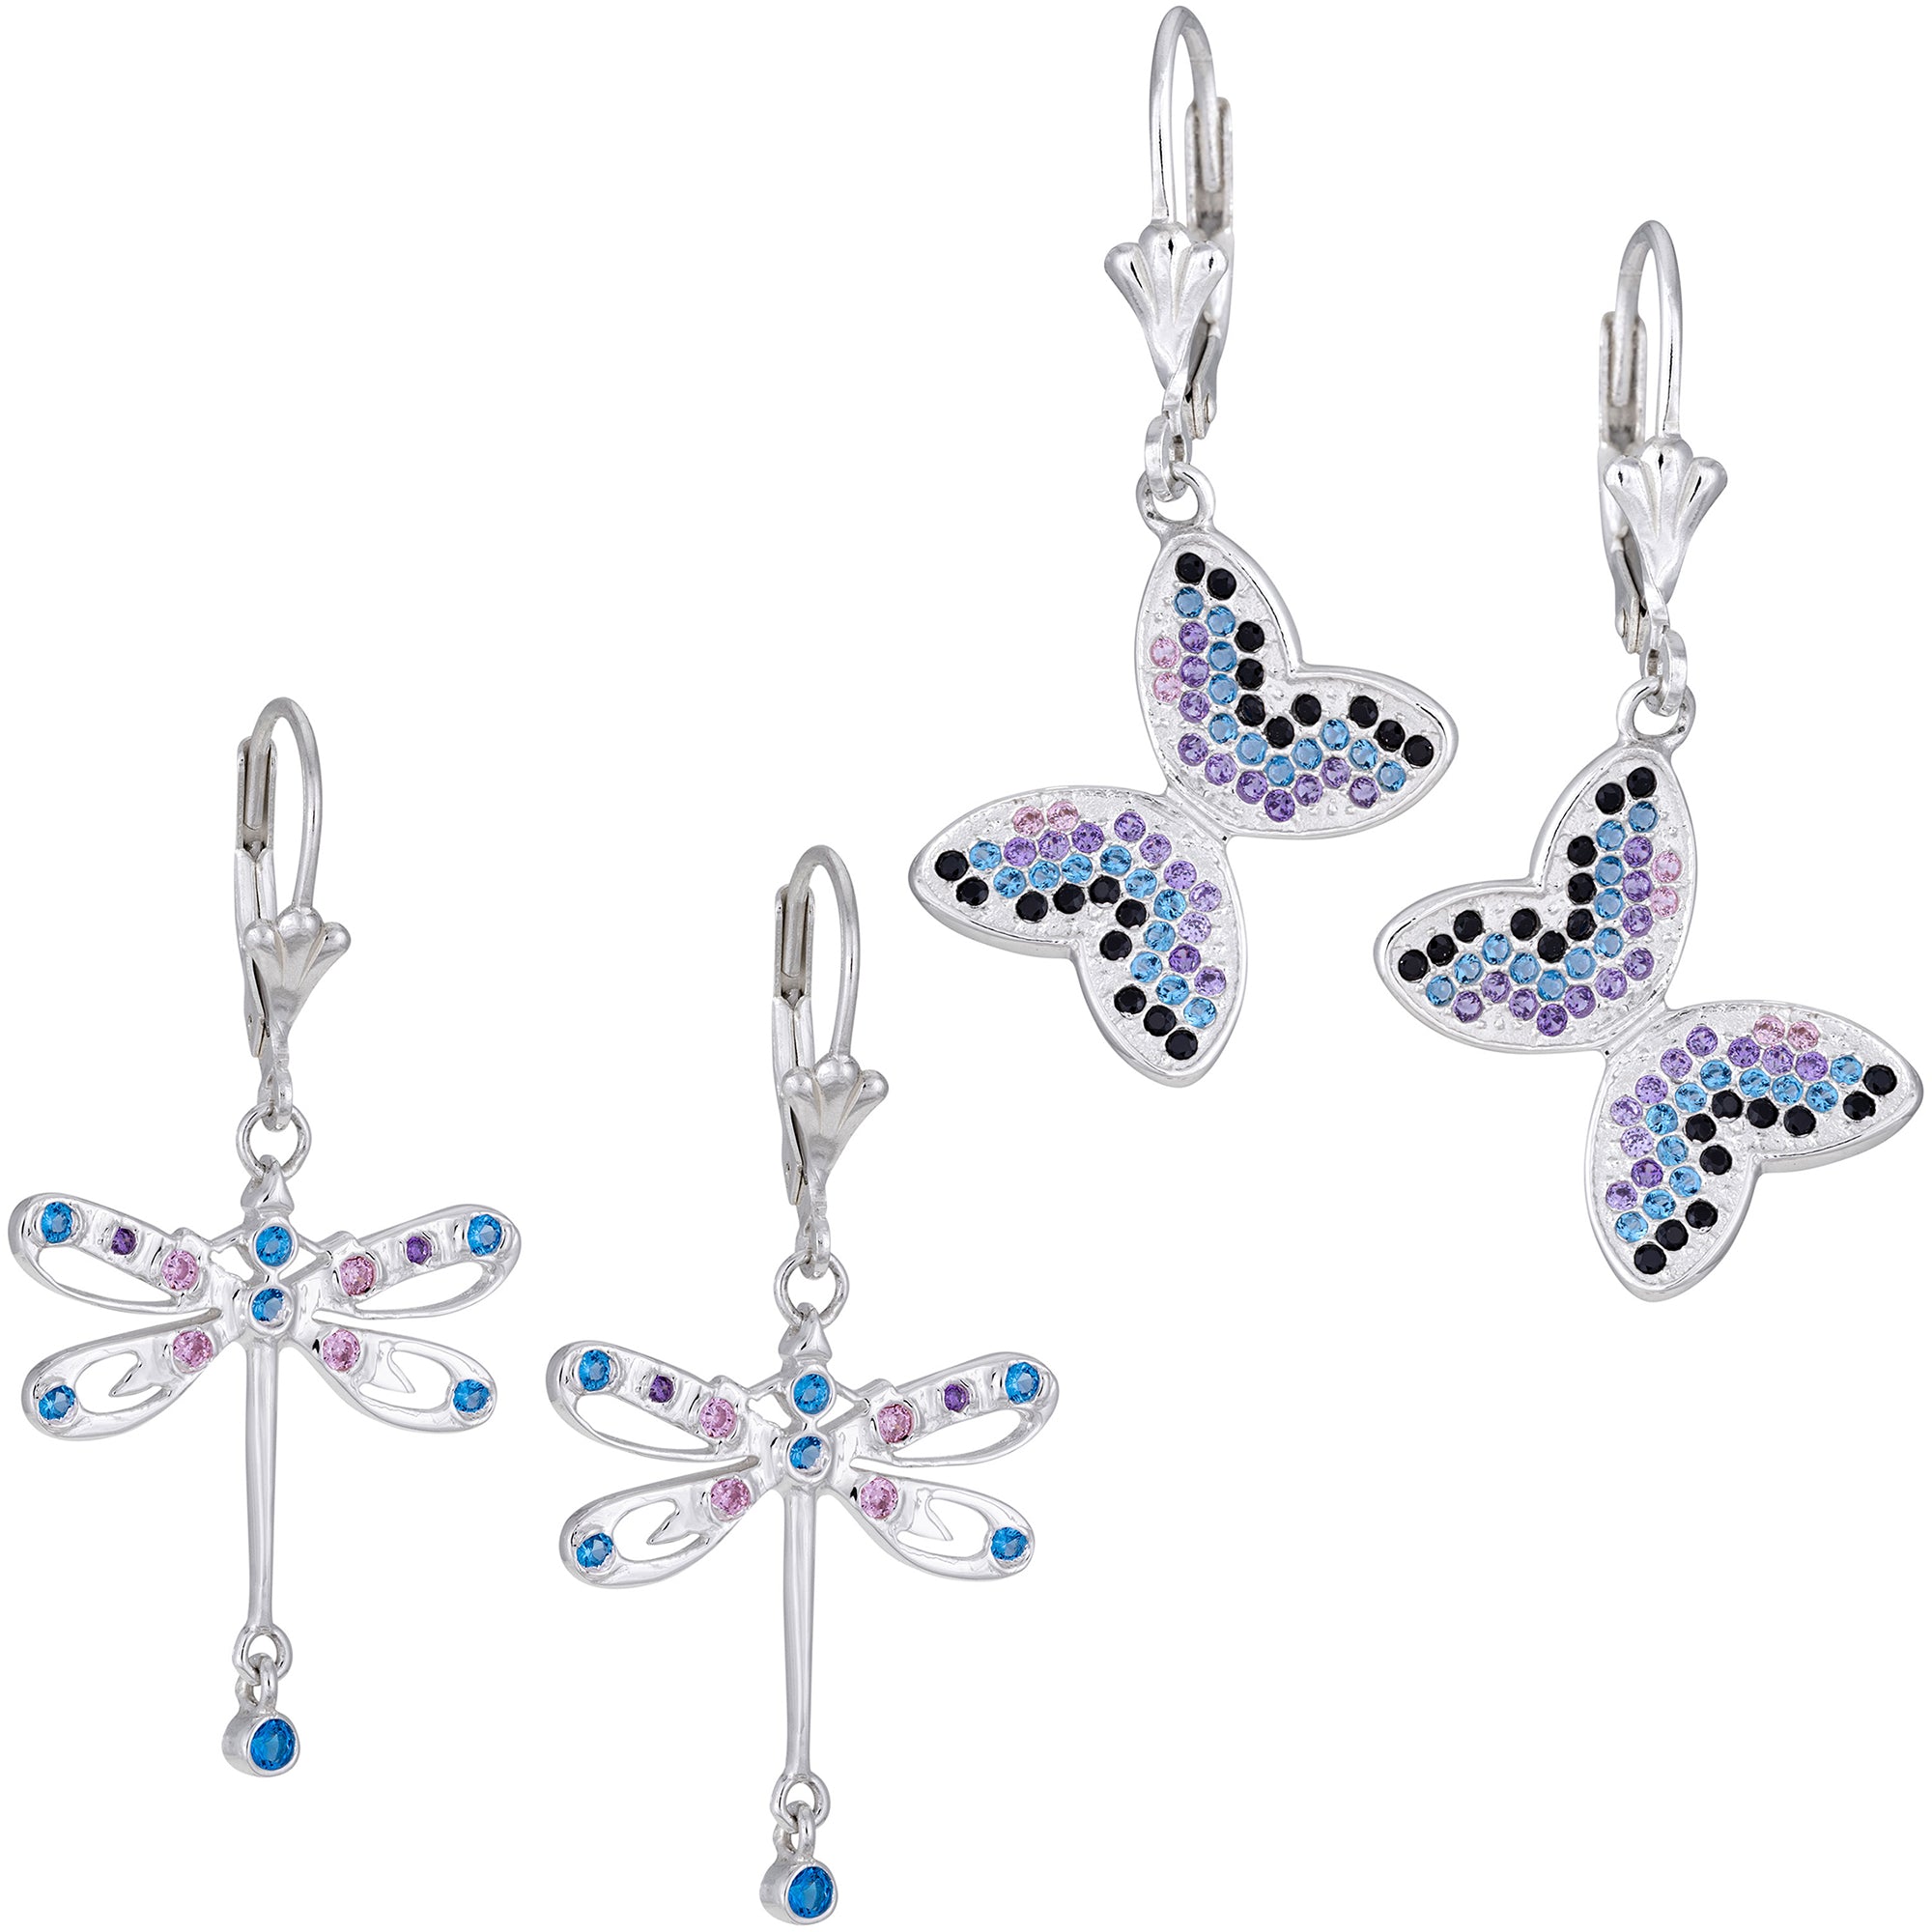 Fluttering Friends Sterling & Crystal Earrings - Butterfly